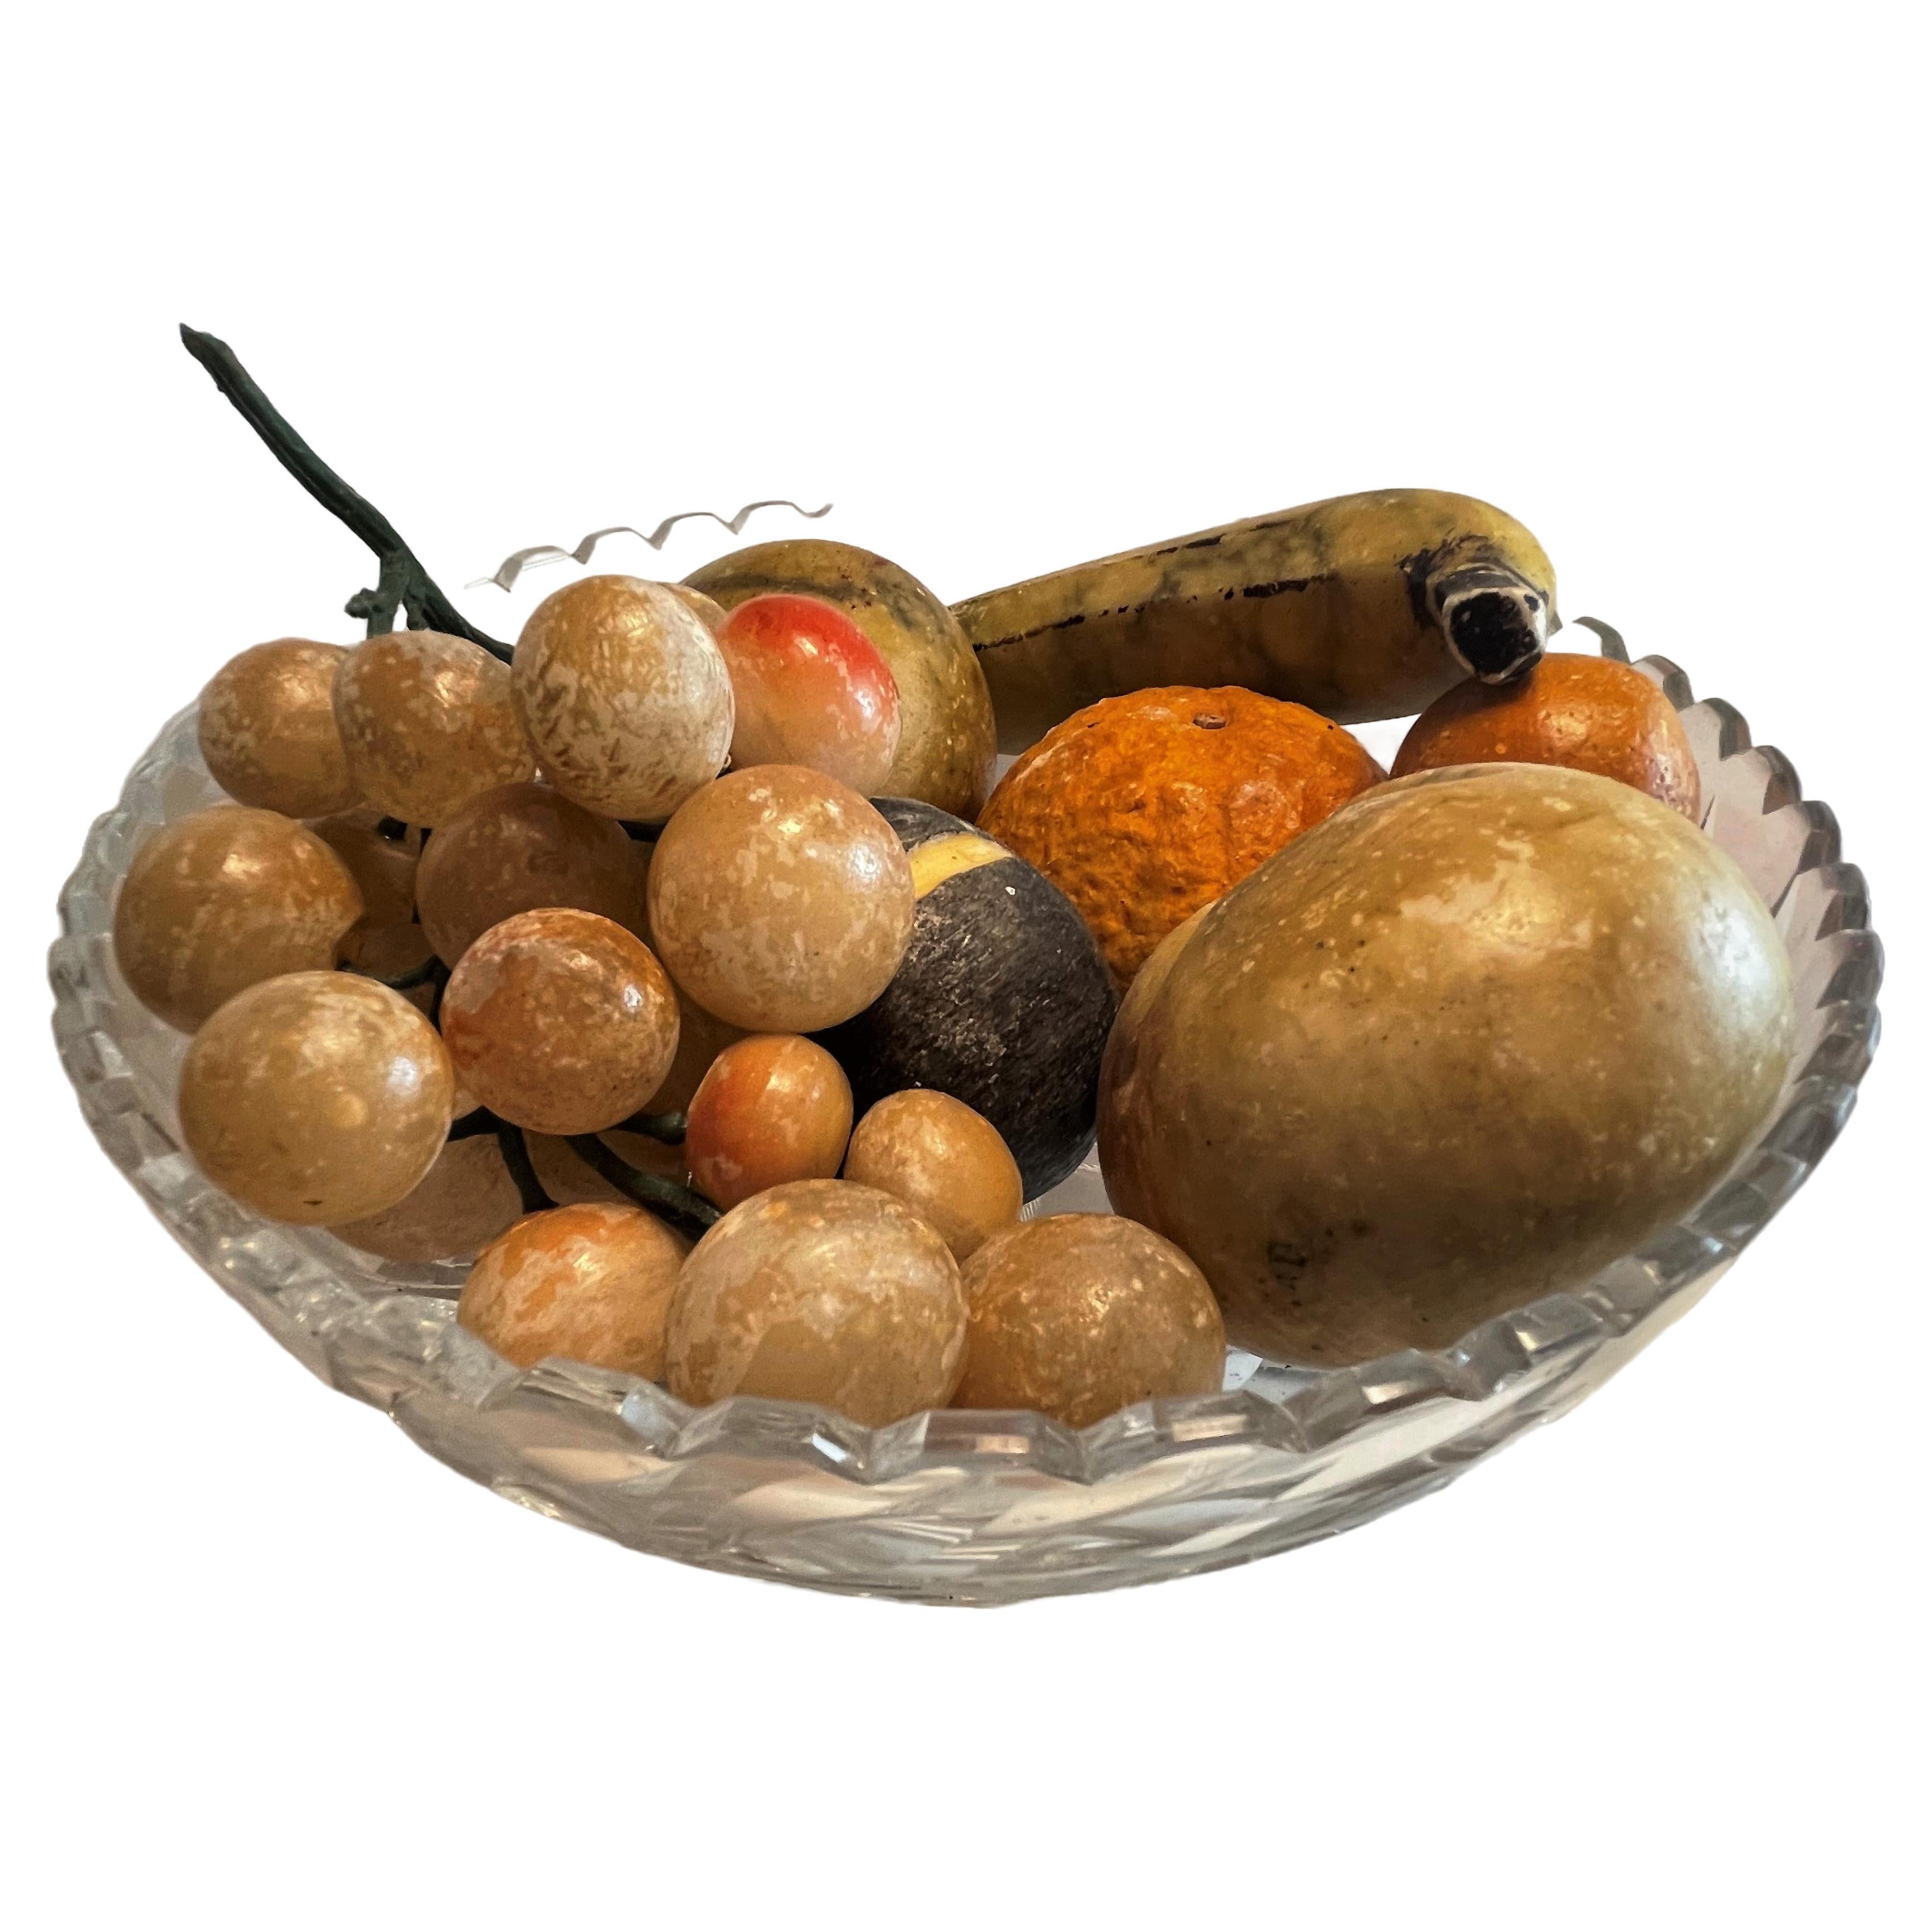 7 Teile Italienisches geschnitztes Obst in Glasschale aus Stein mit Trauben, Bananen, Orange und Apfel 